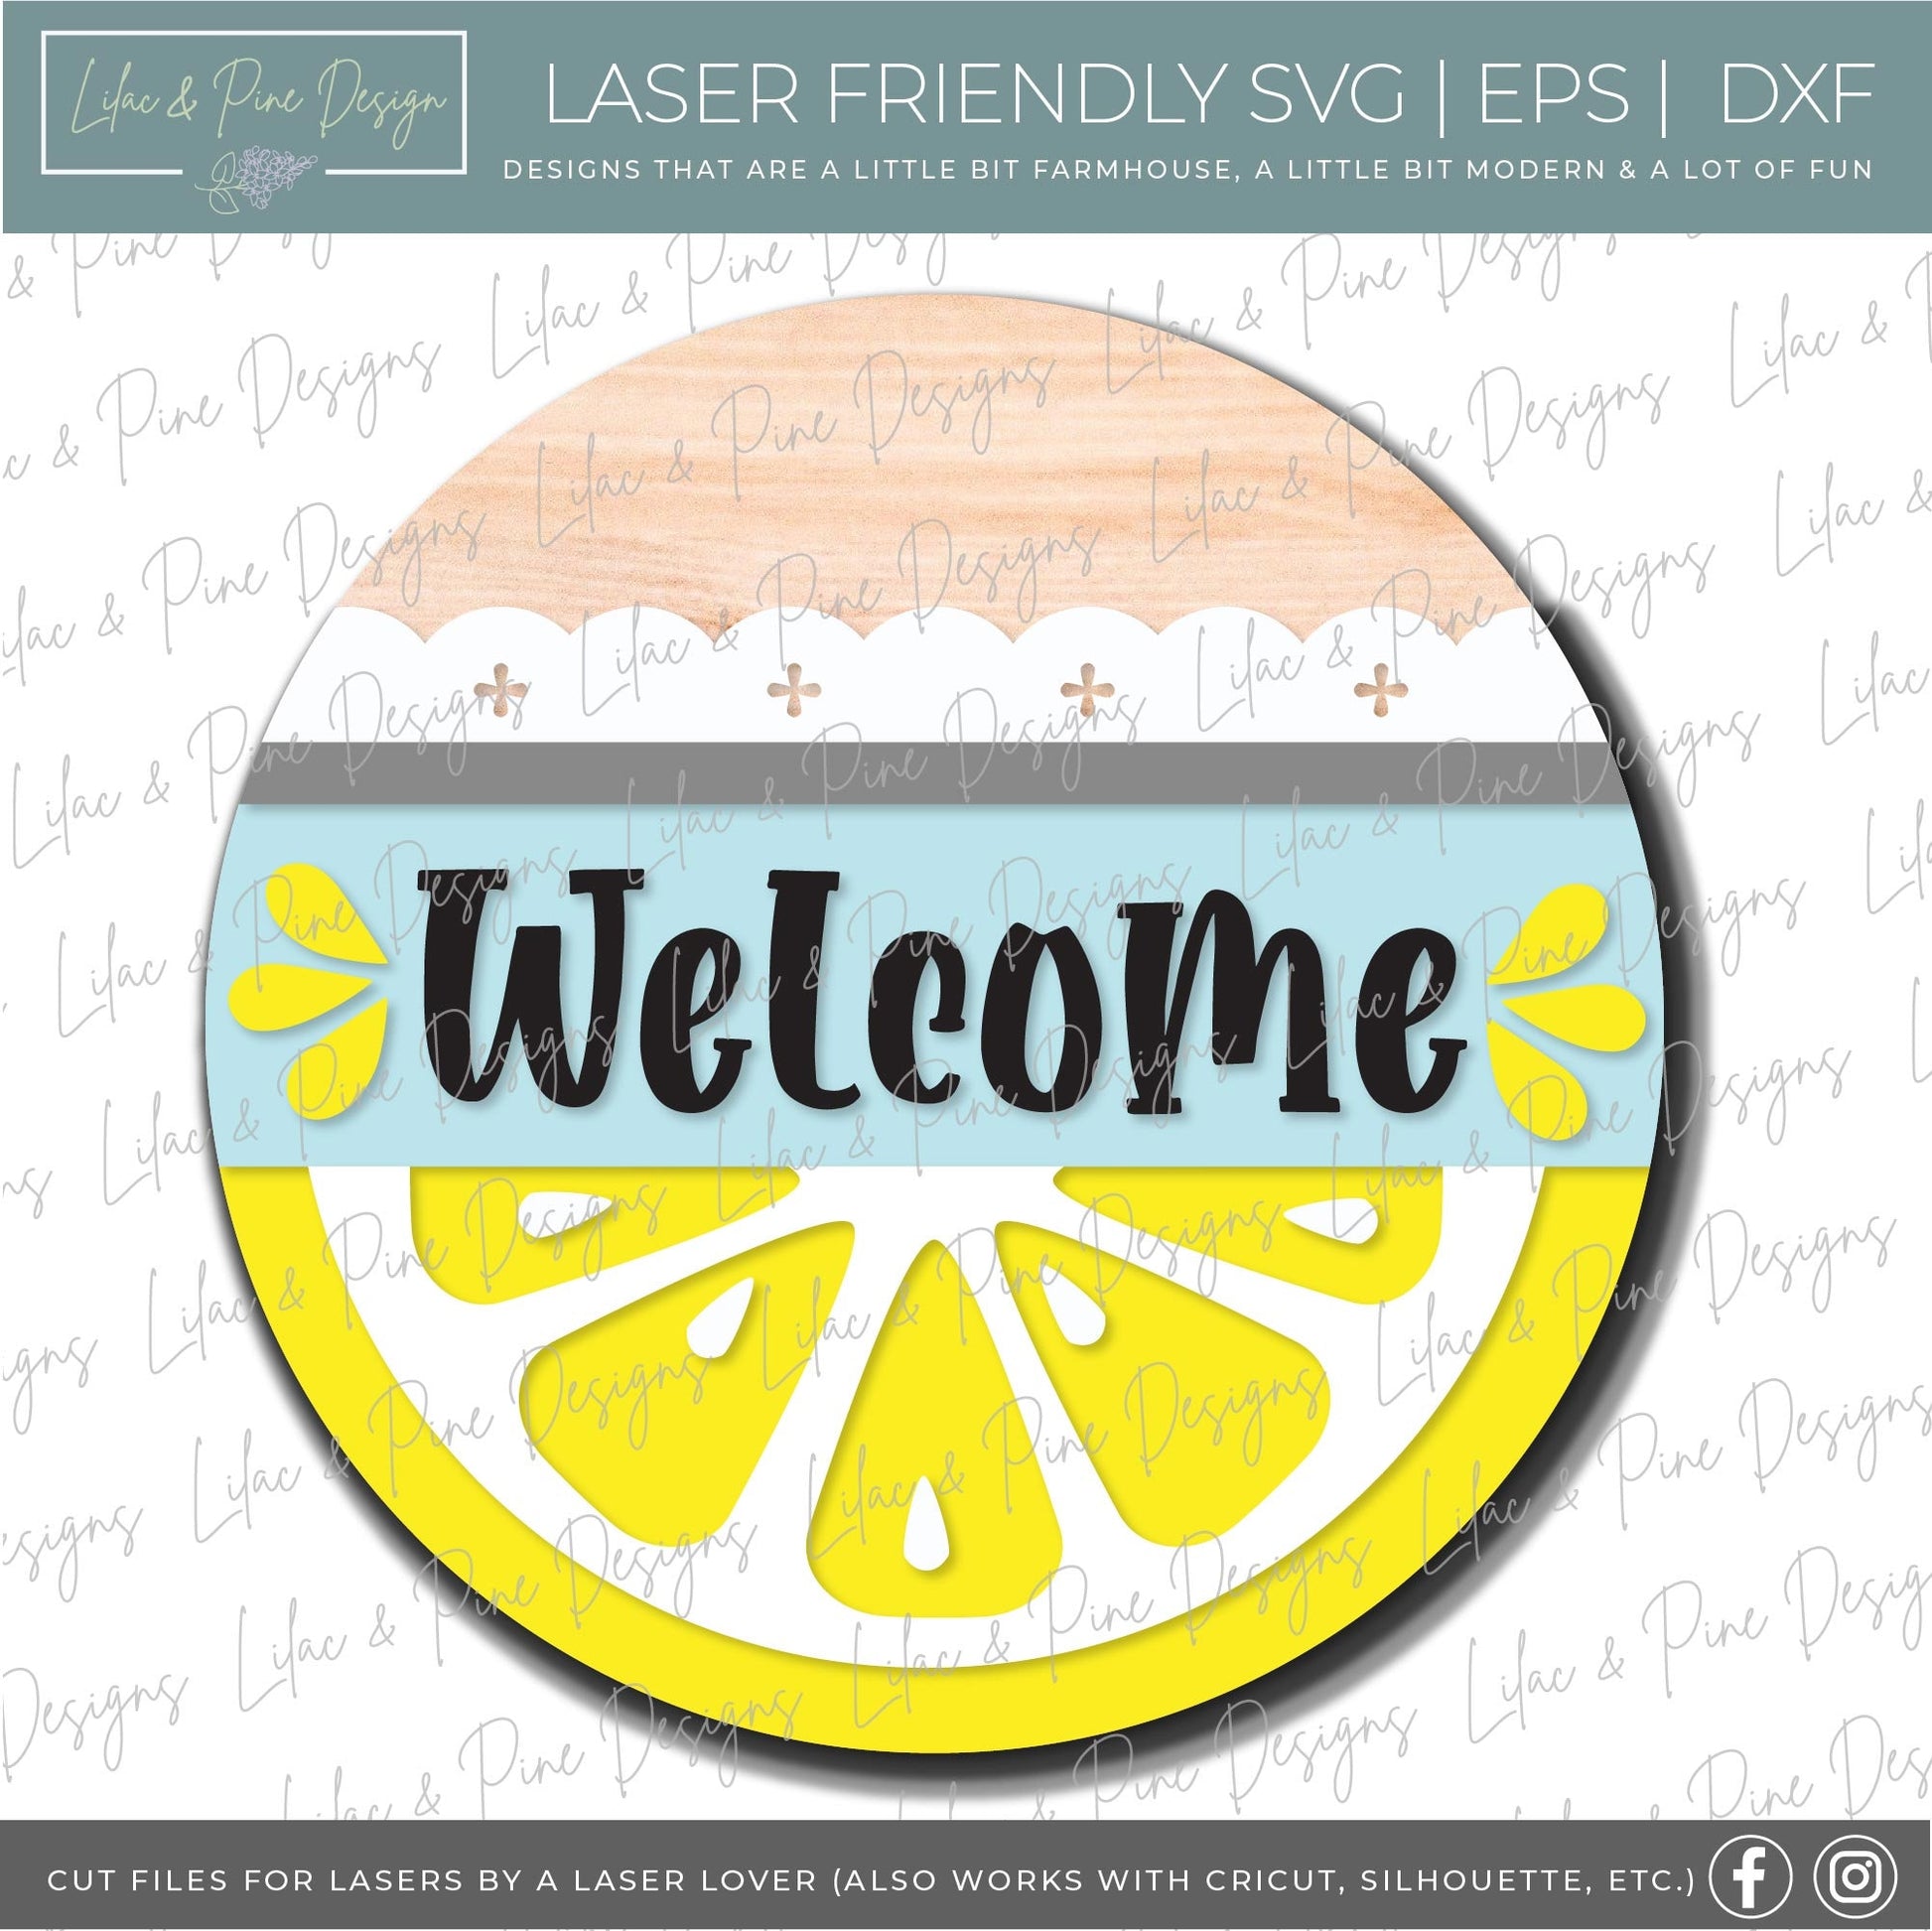 Lemon door hanger SVG, Lemon Welcome sign, Lemon round sign svg, Lemonade sign, Summer decor, Glowforge cut file, laser SVG file